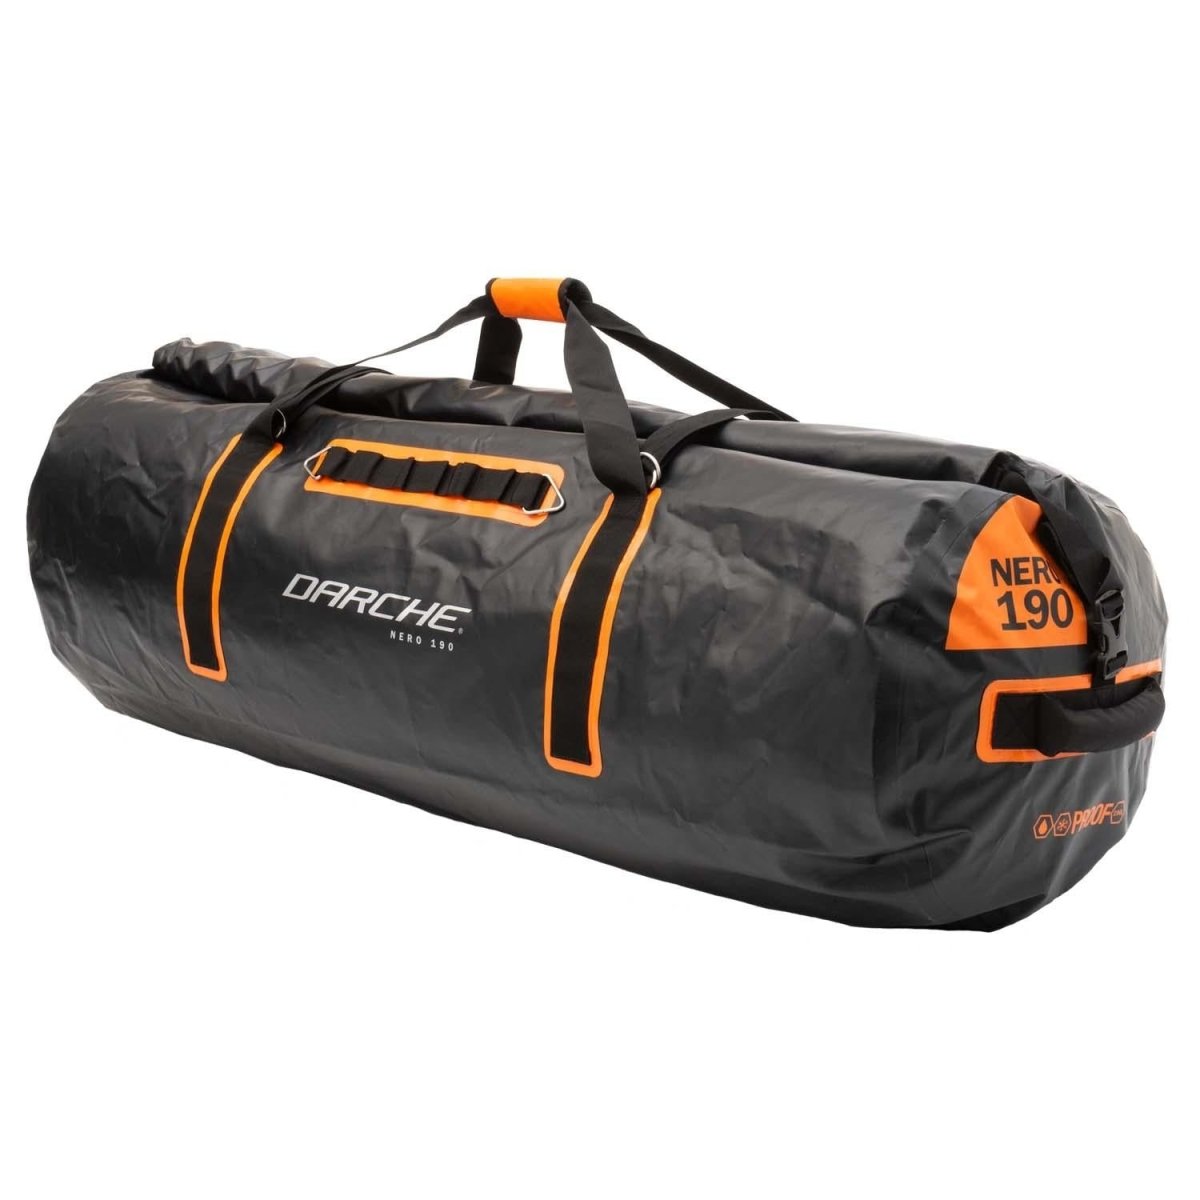 Darche - NERO 190 Rugged Swag Bag | Darche | A247 Gear